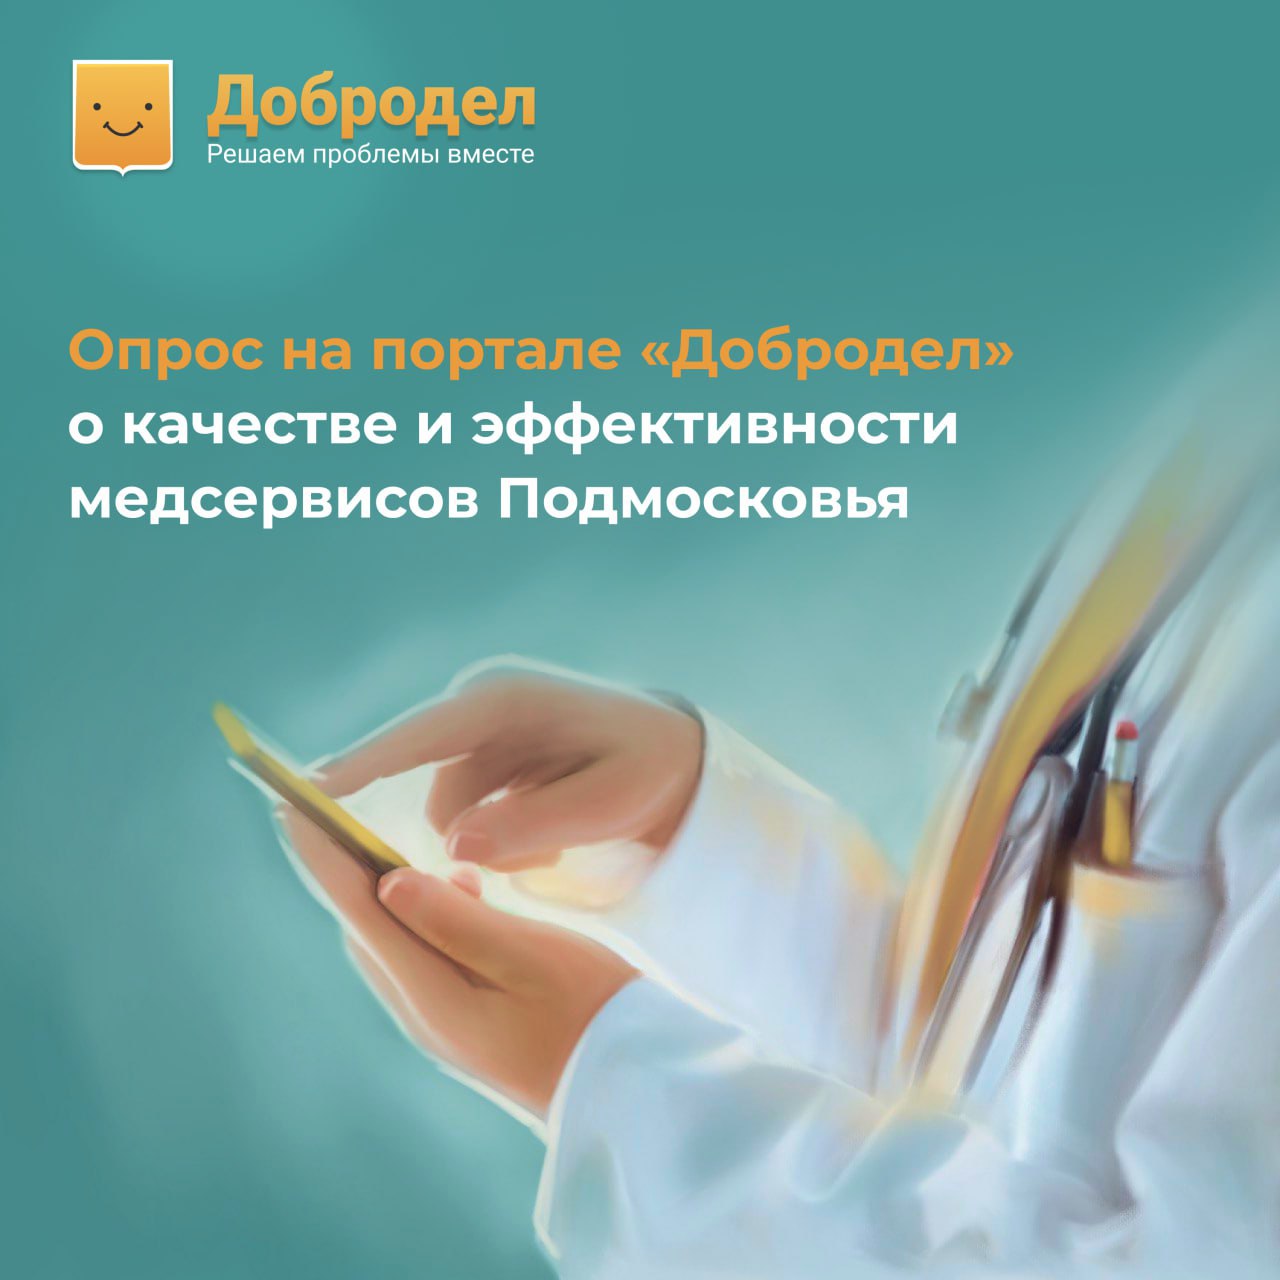 На портале «Добродел» запущен опрос об эффективности медицинских сервисов в Подмосковье